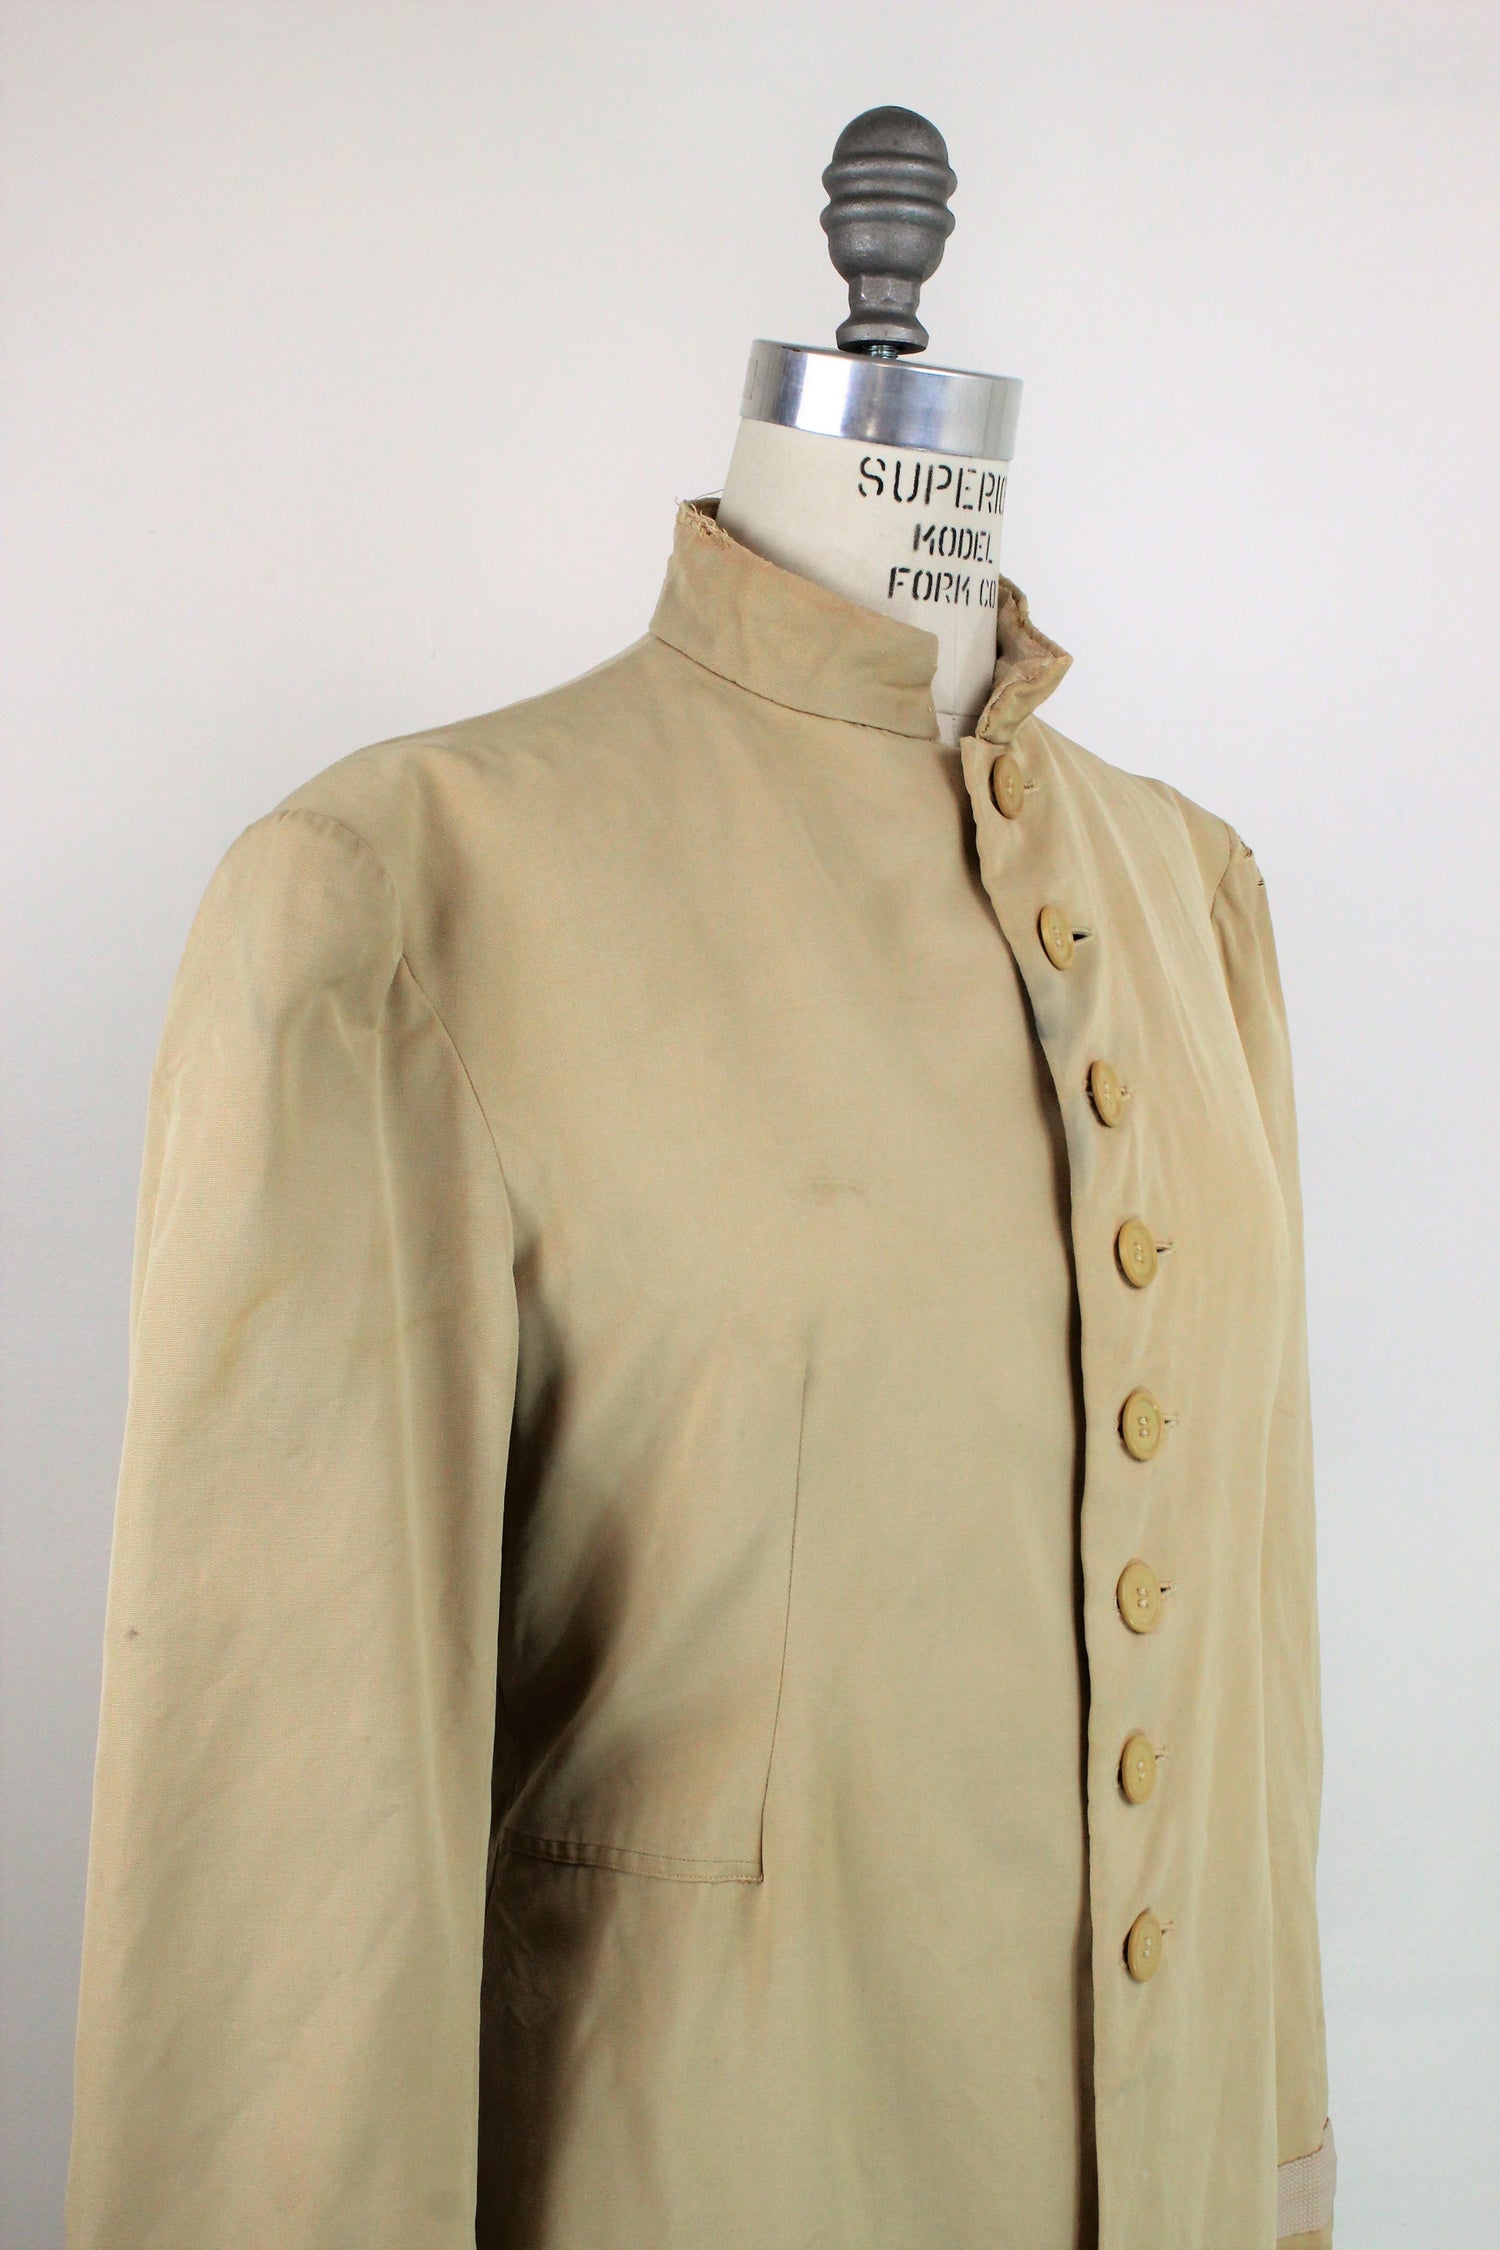 Vintage Hollywood Costume Military Jacket 